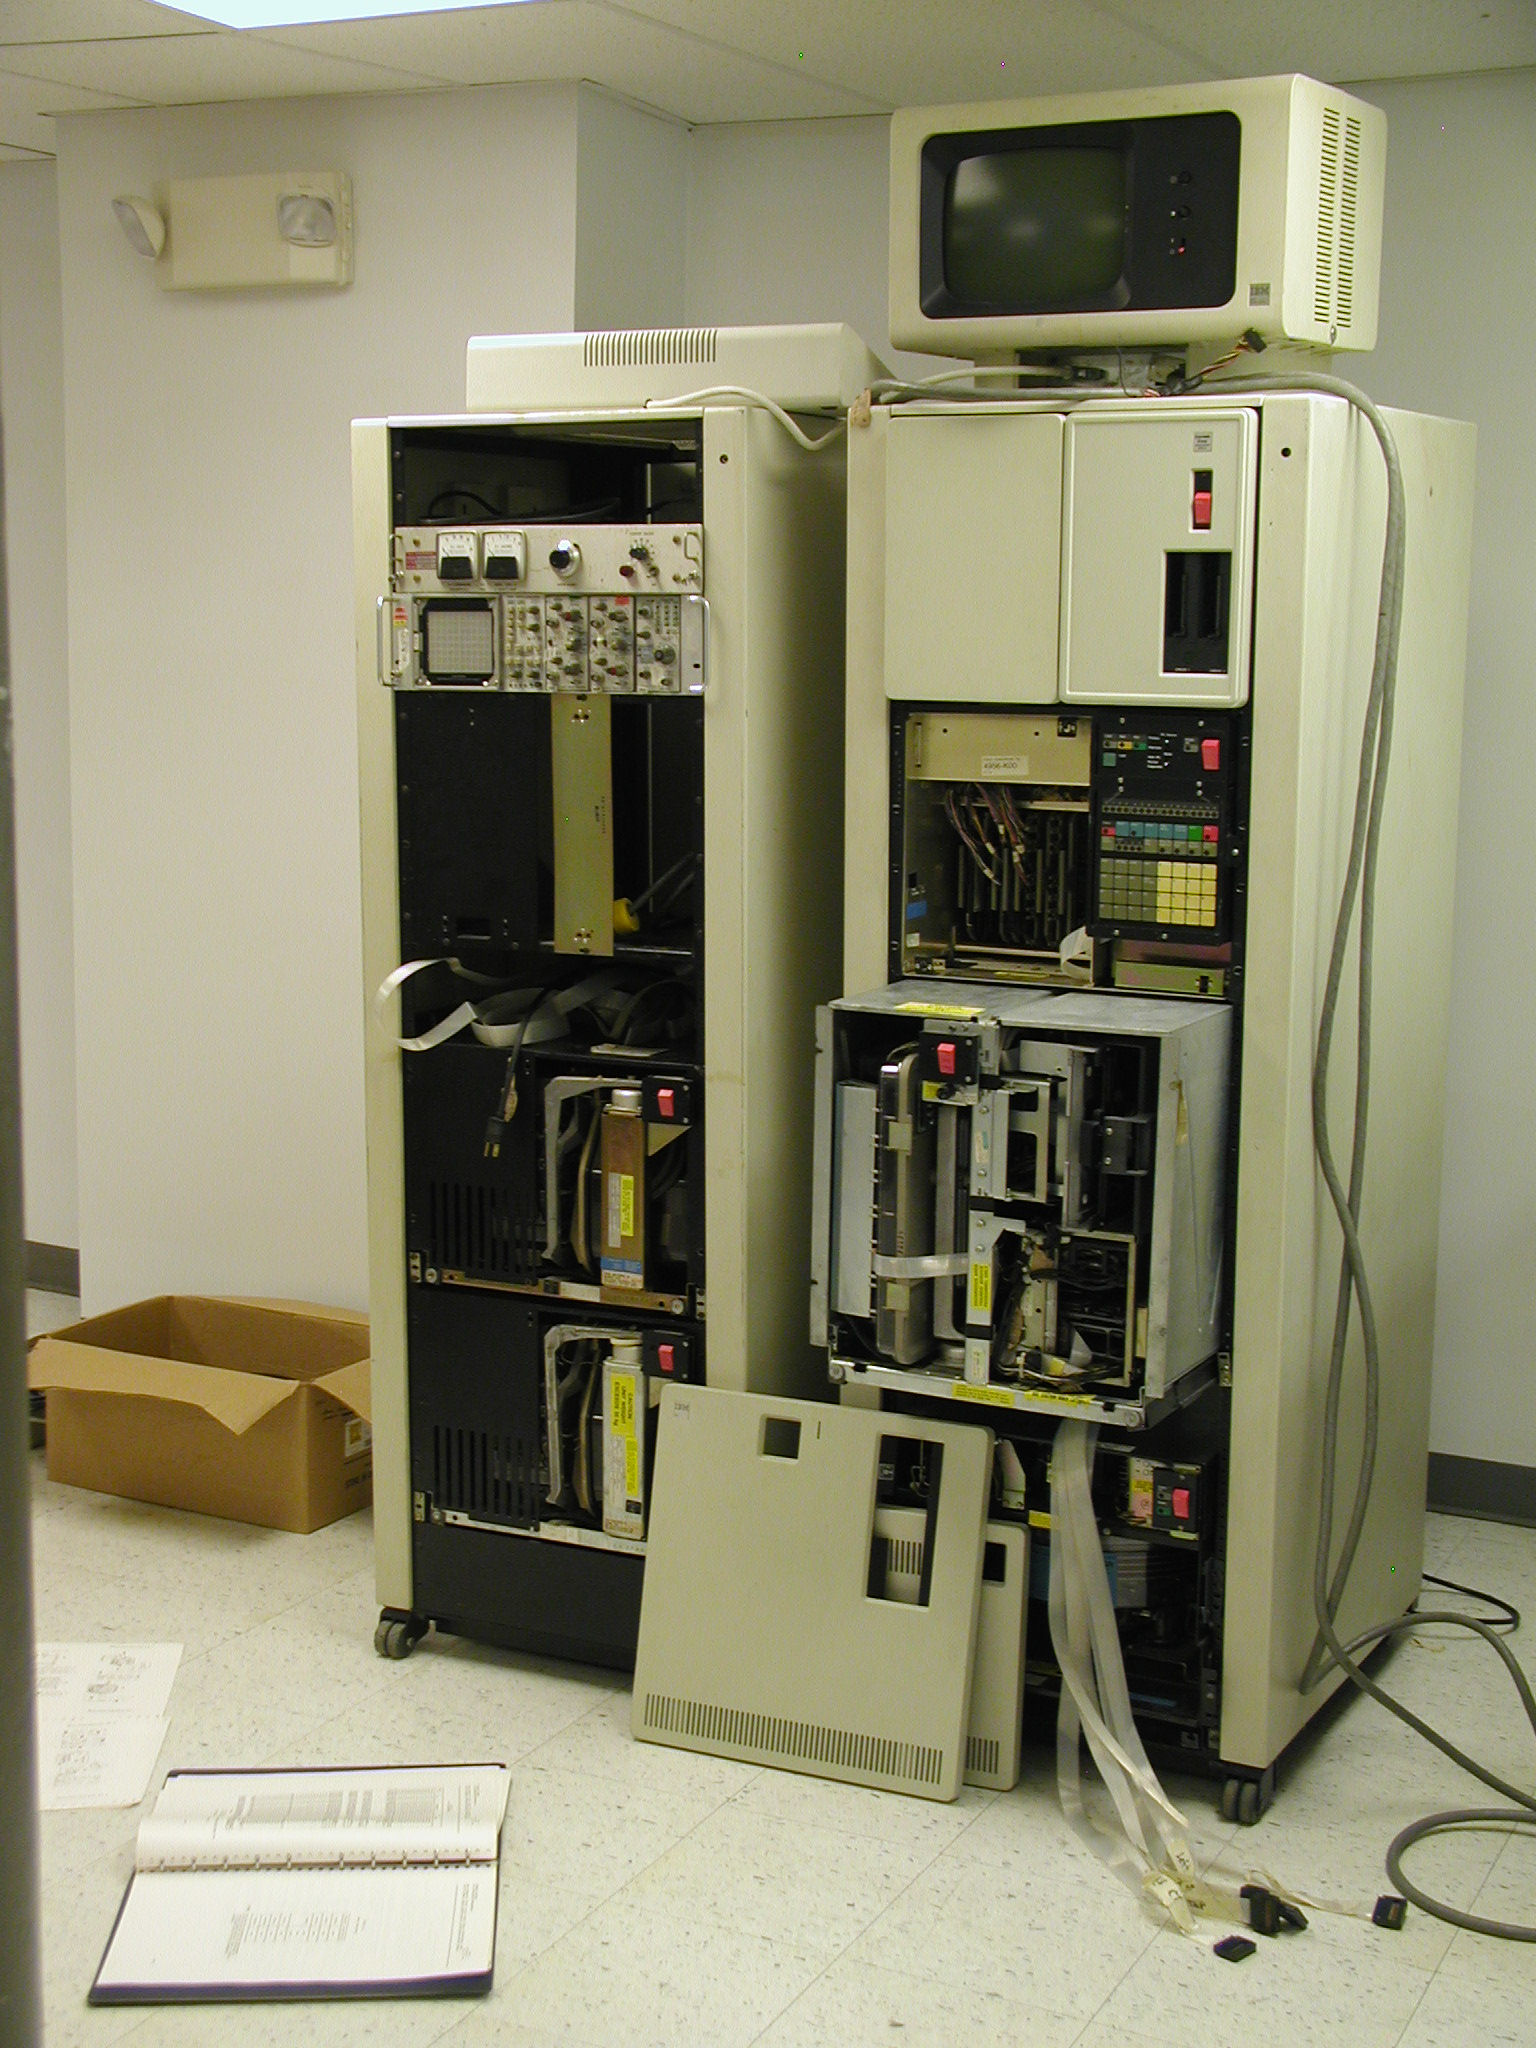 Военные США используют 8-дюймовые гибкие дискеты и компьютеры 70-х годов для управления ядерным арсеналом - 2